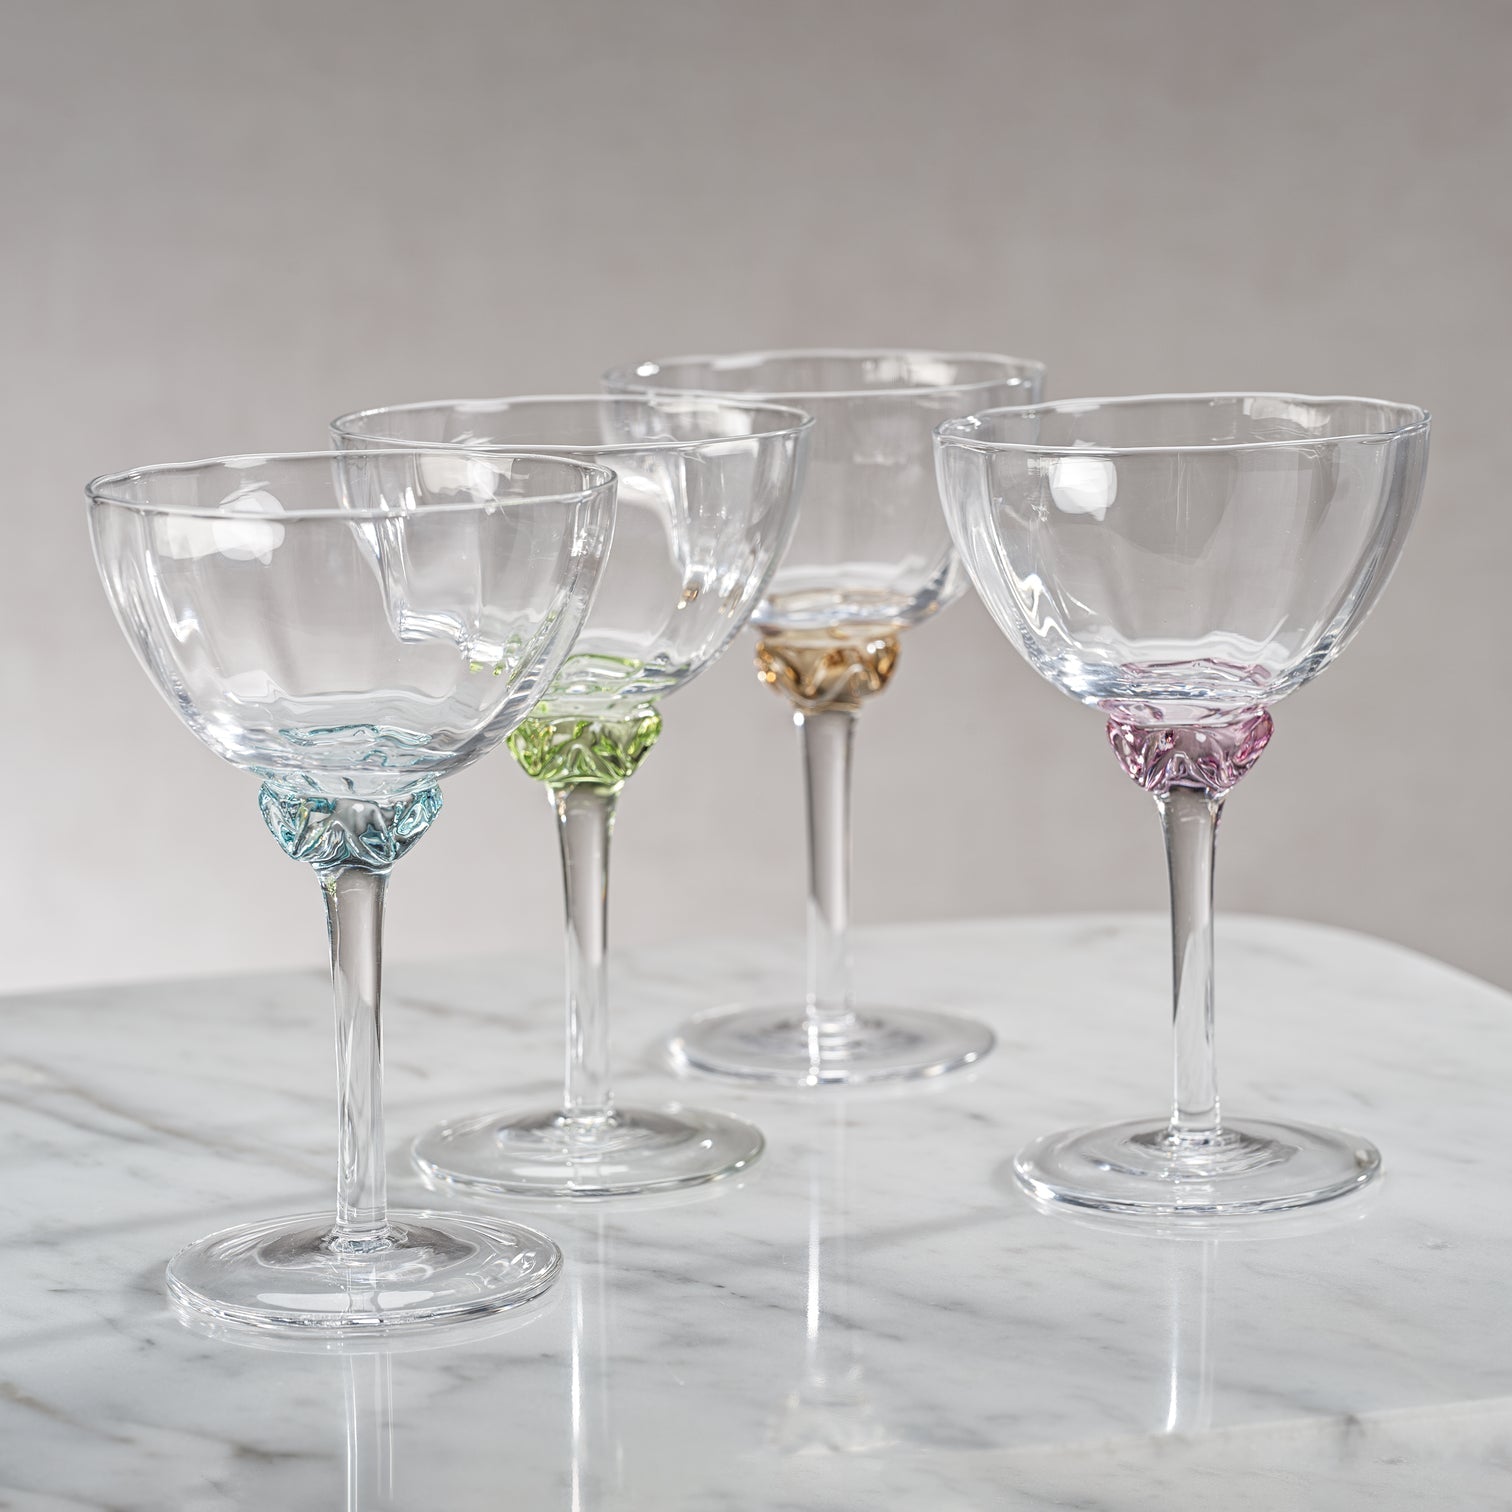 Colette Glassware - Martini/Cocktail Glass